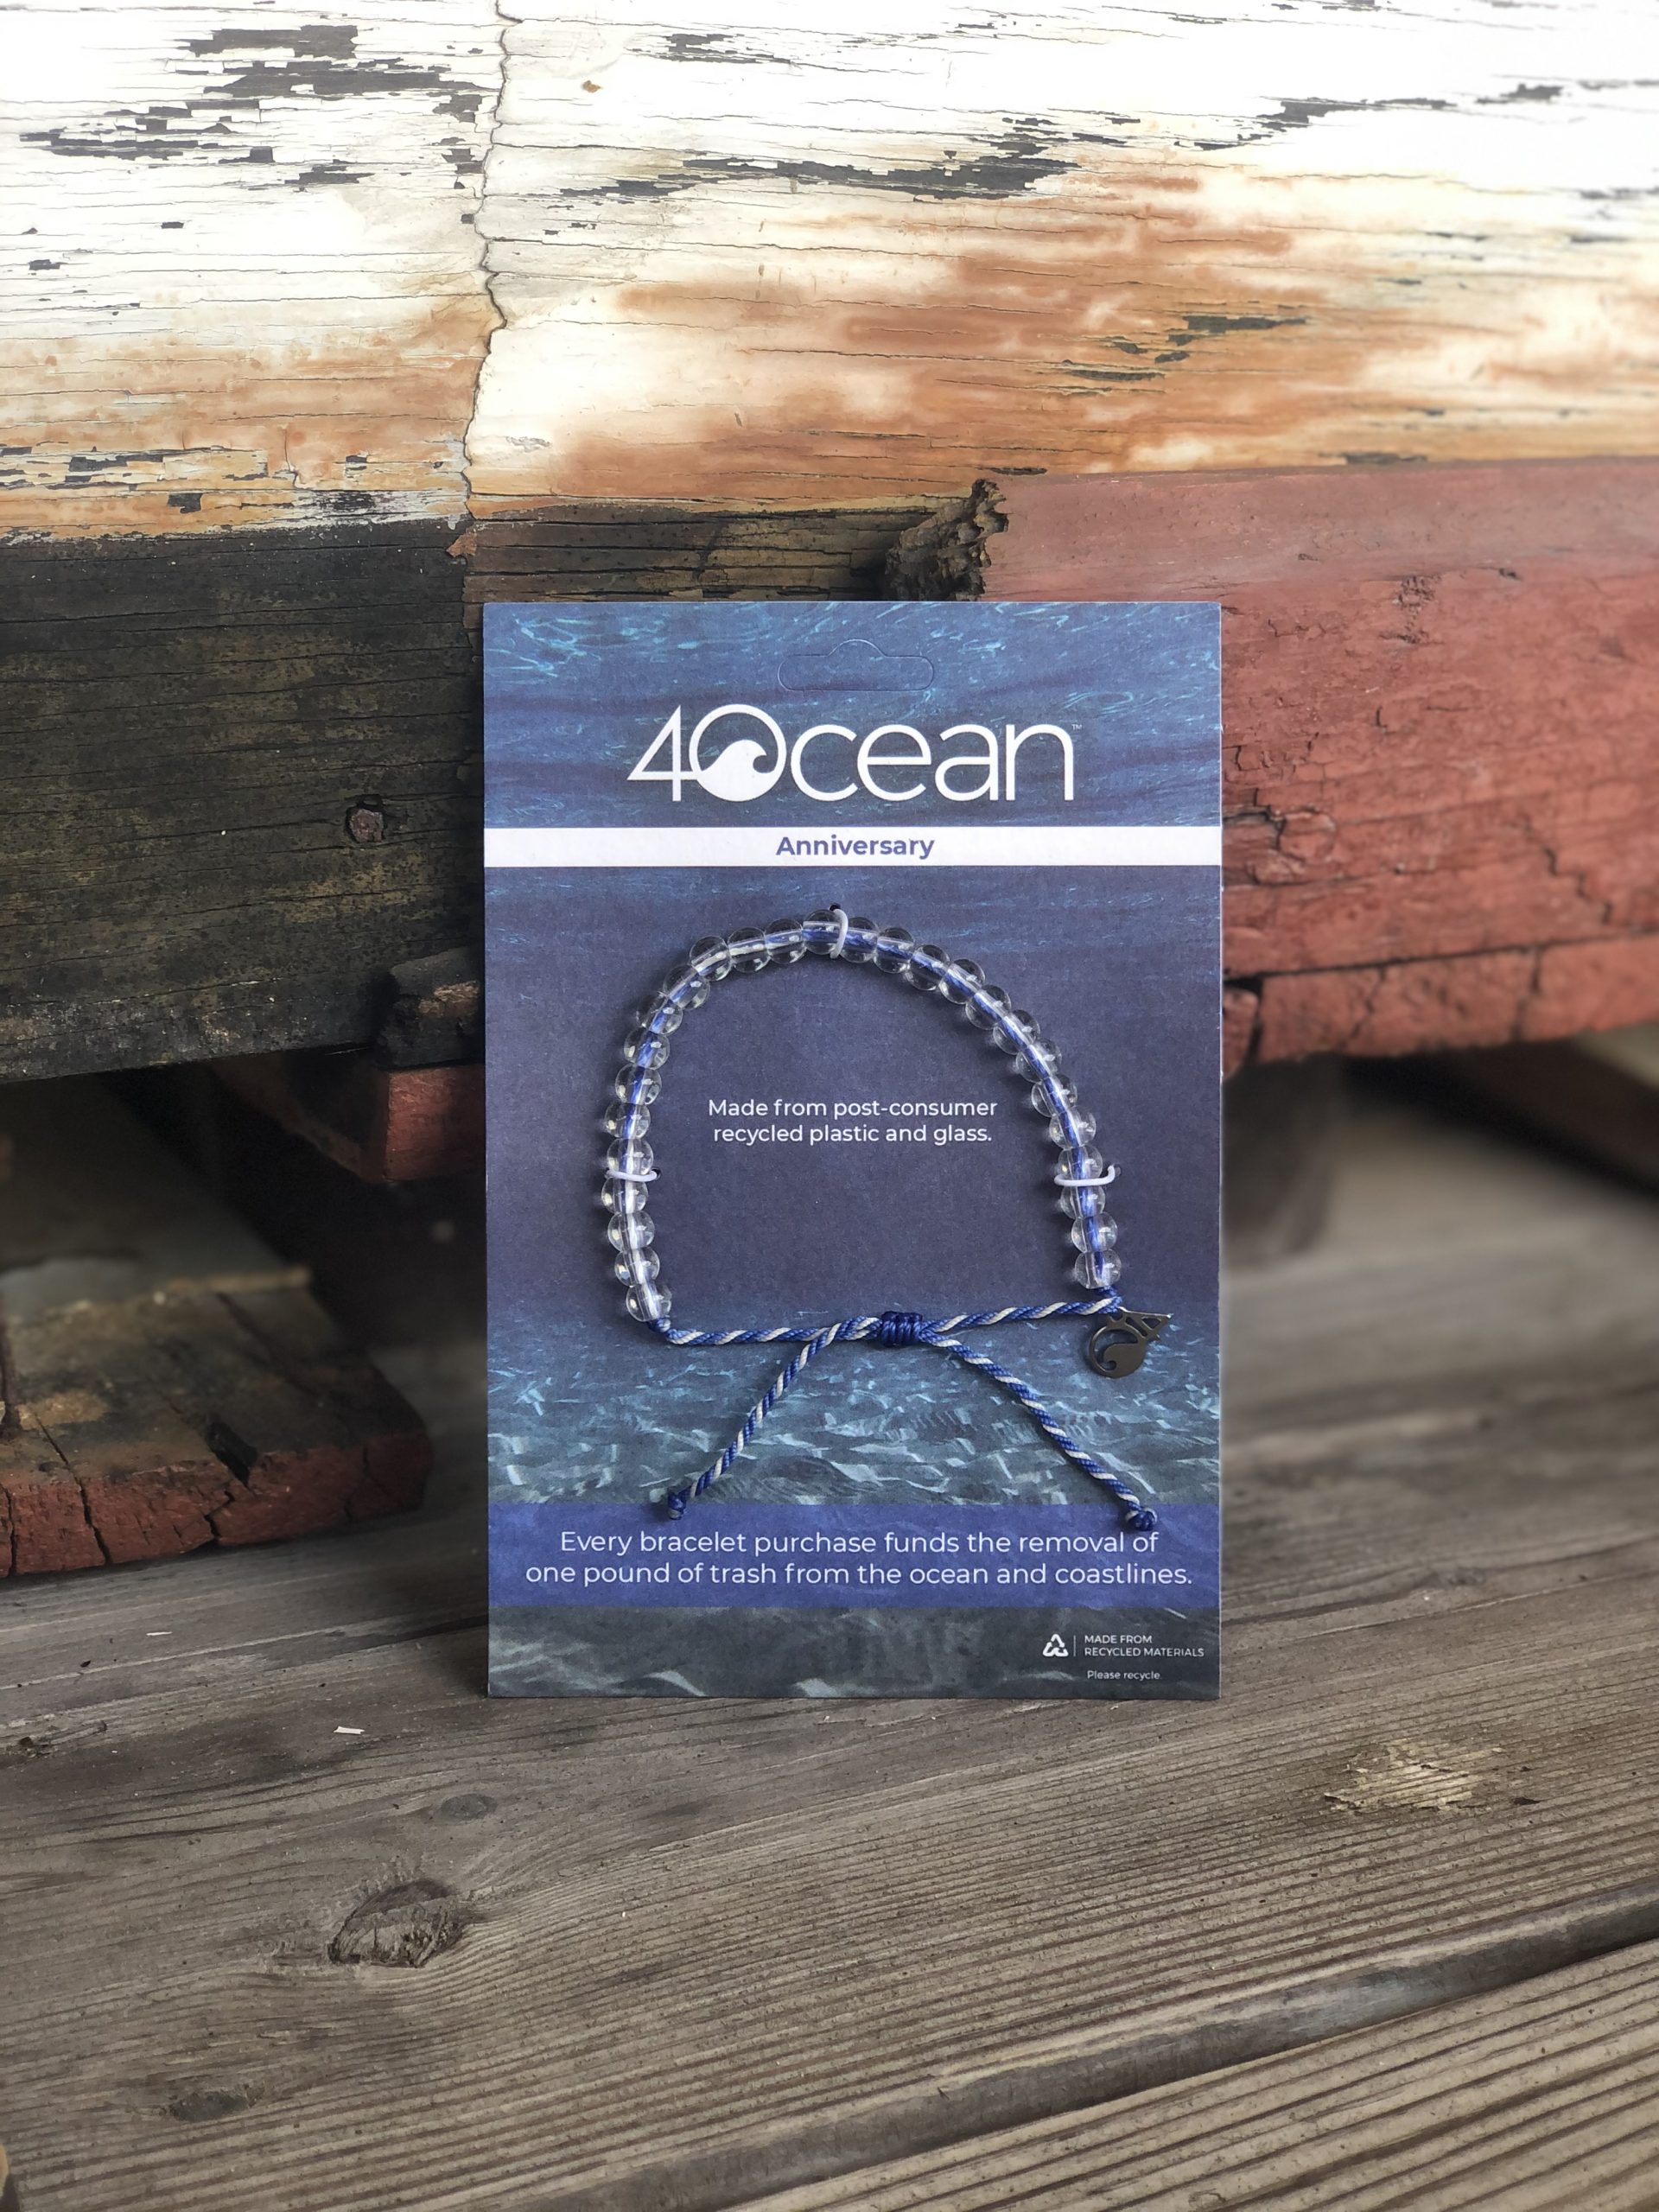 140 Ocean ideas | 4ocean, ocean bracelet, ocean